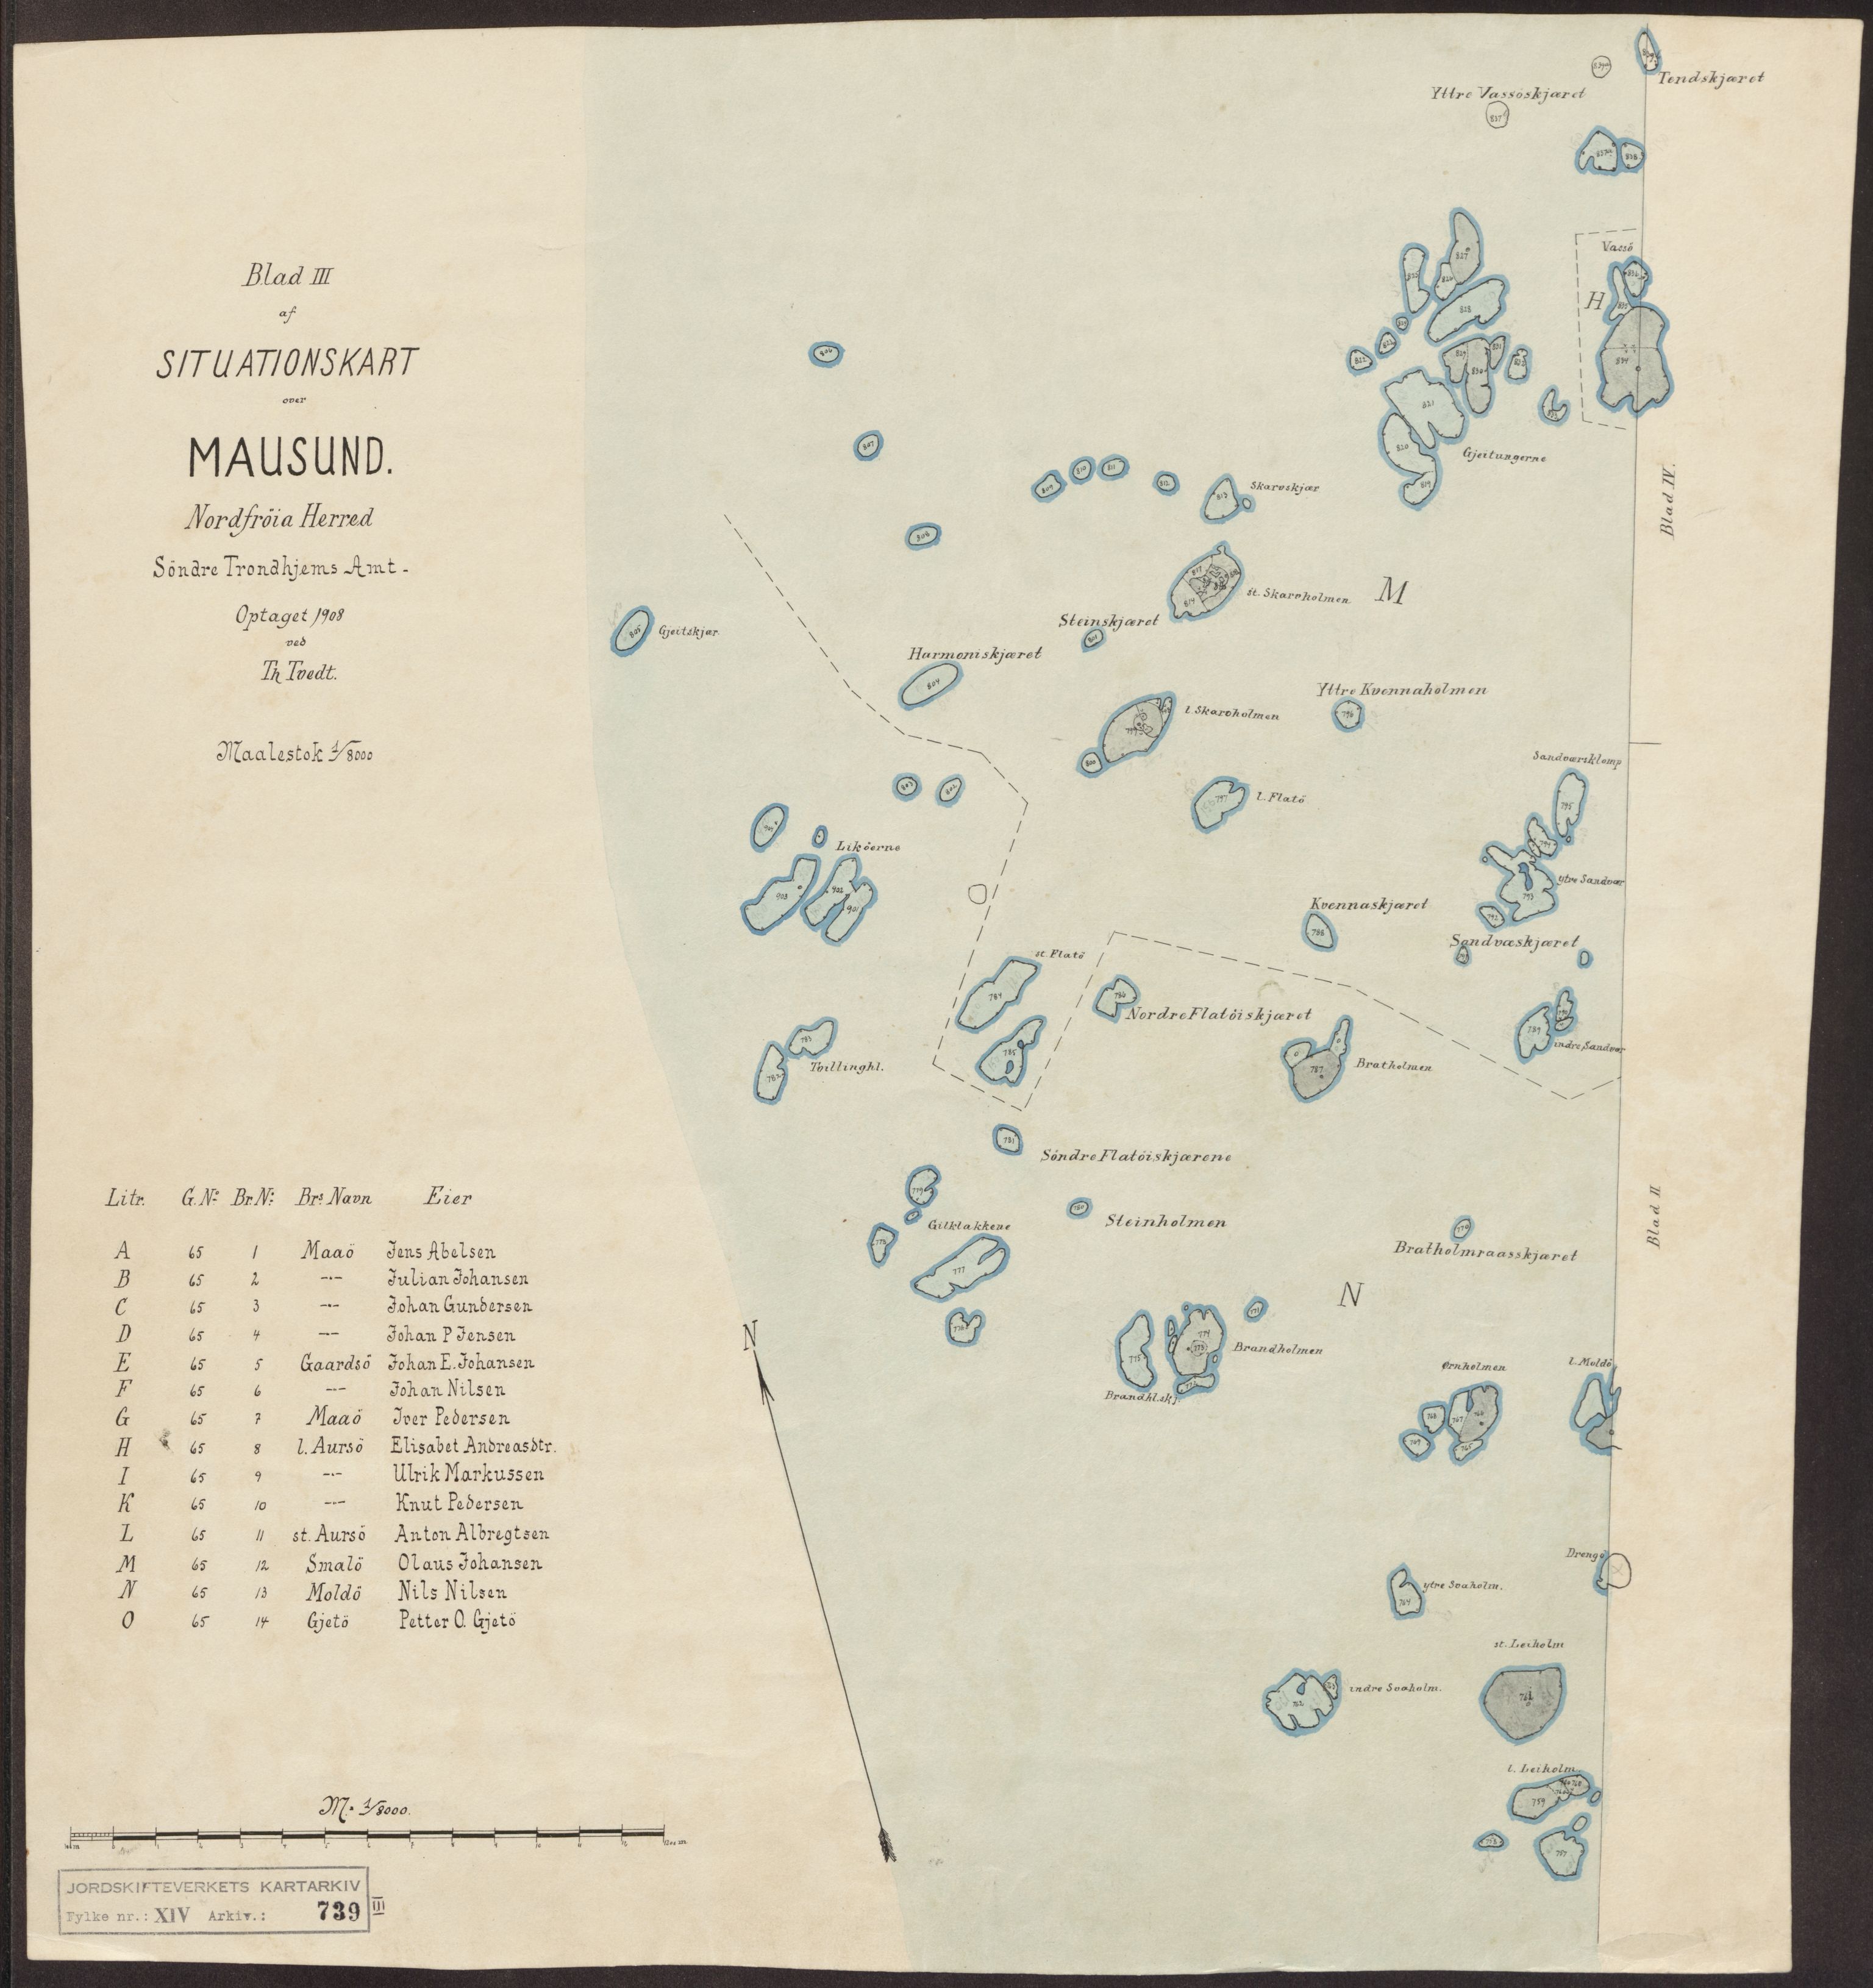 Jordskifteverkets kartarkiv, RA/S-3929/T, 1859-1988, p. 1106